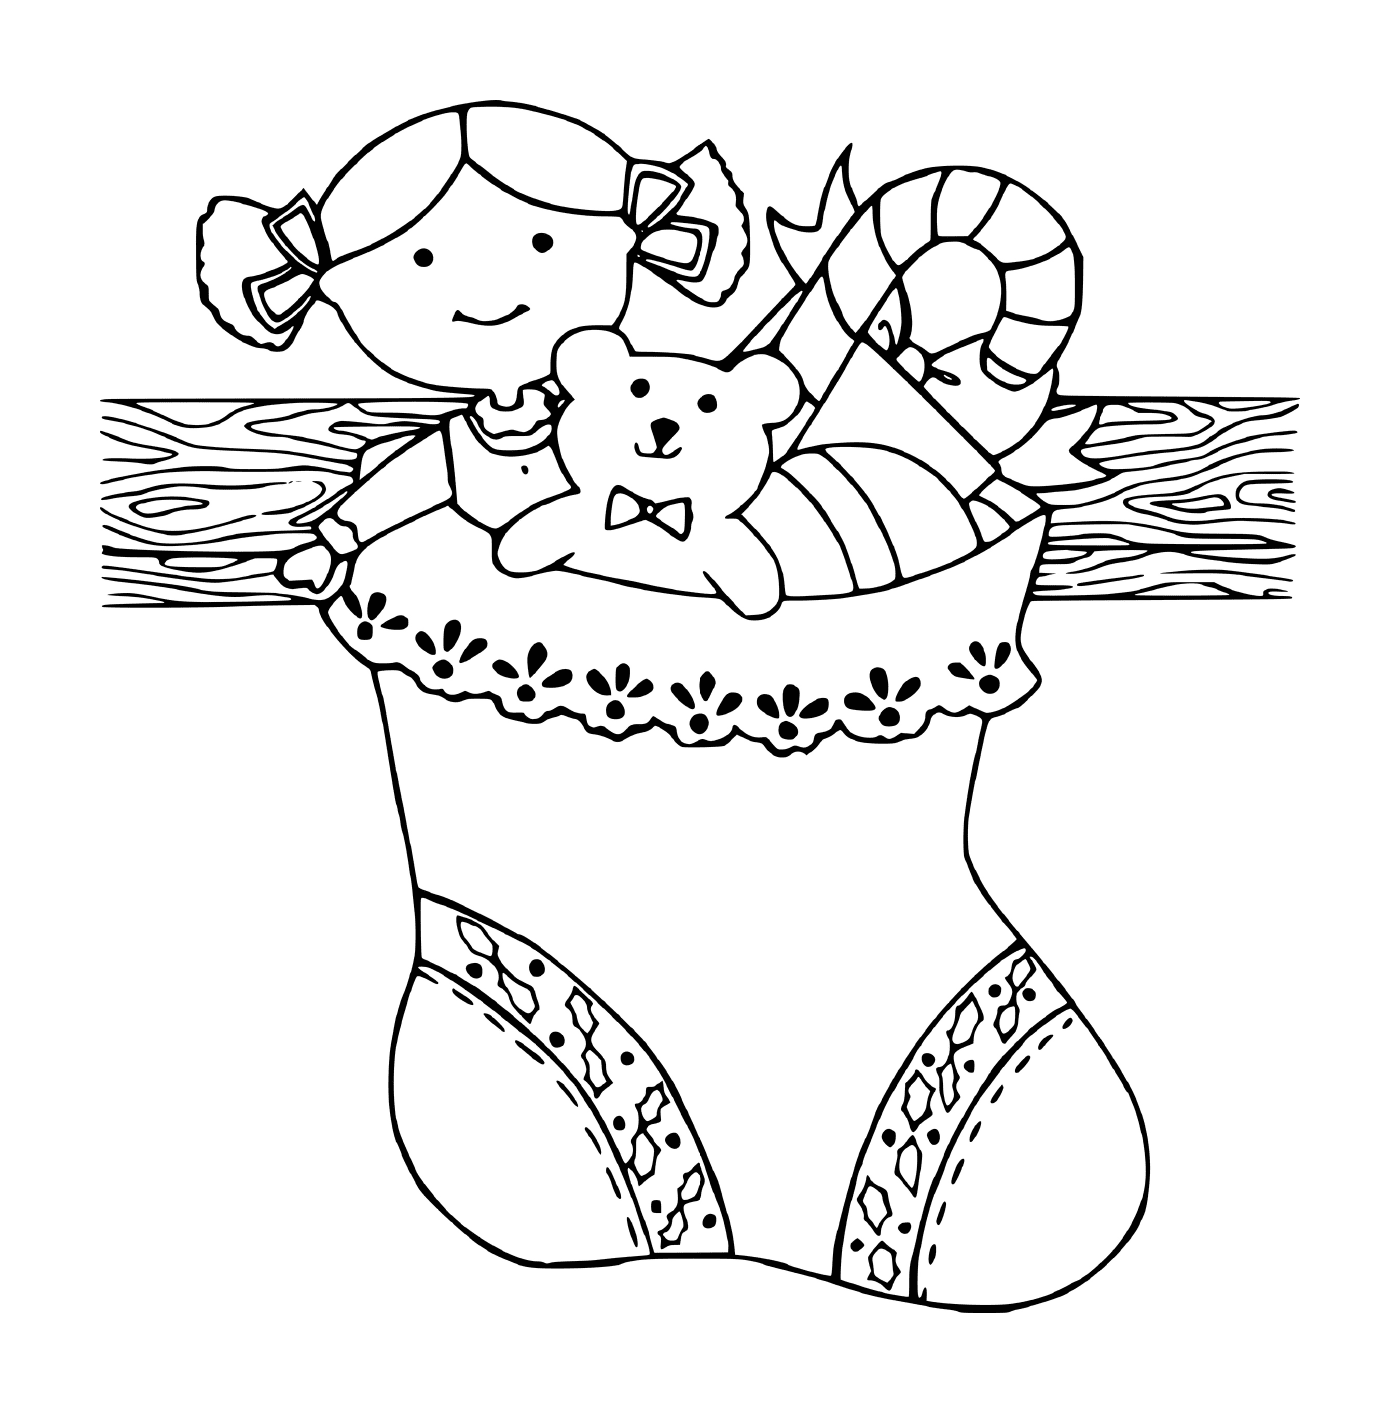  一只洋娃娃和一只泰迪熊 穿着圣诞短袜 在壁炉的壁炉上 